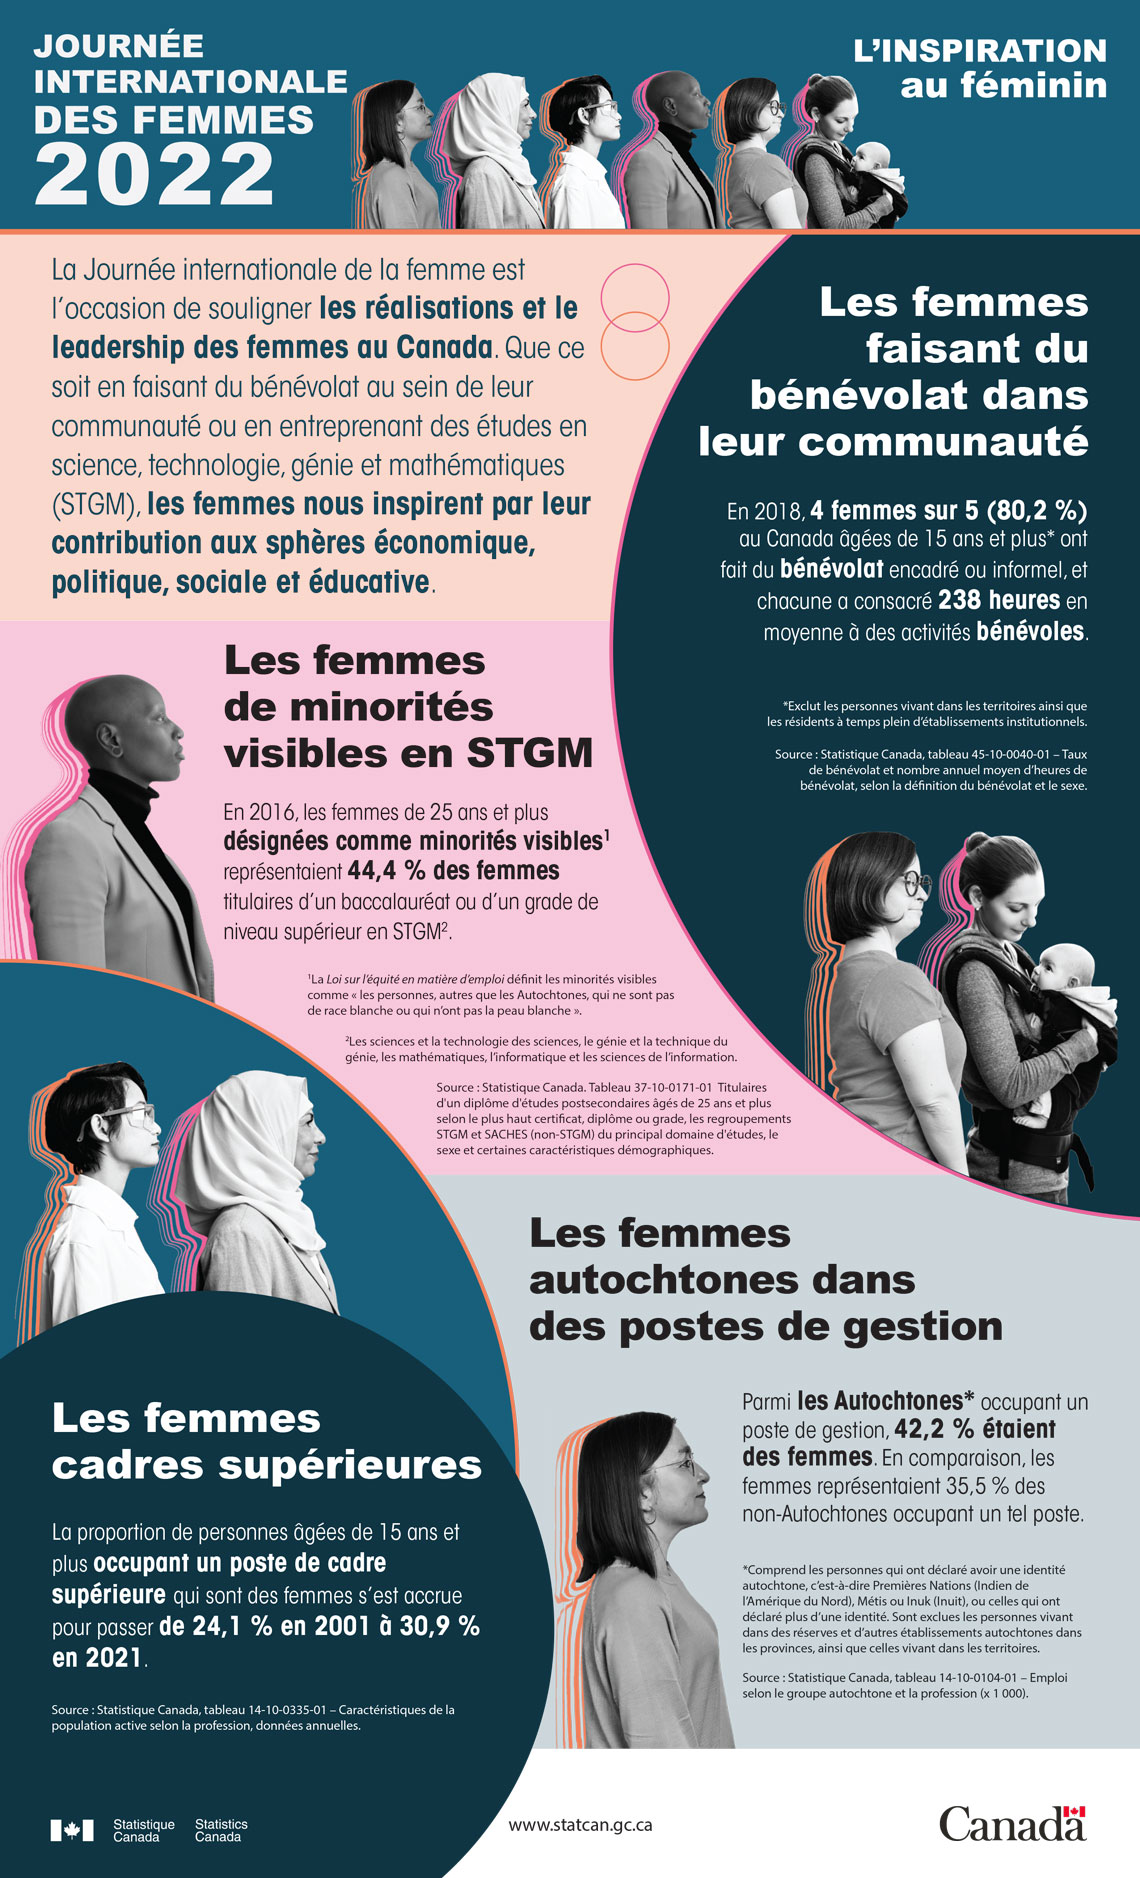 Journée internationale des femmes de 2022... en chiffres